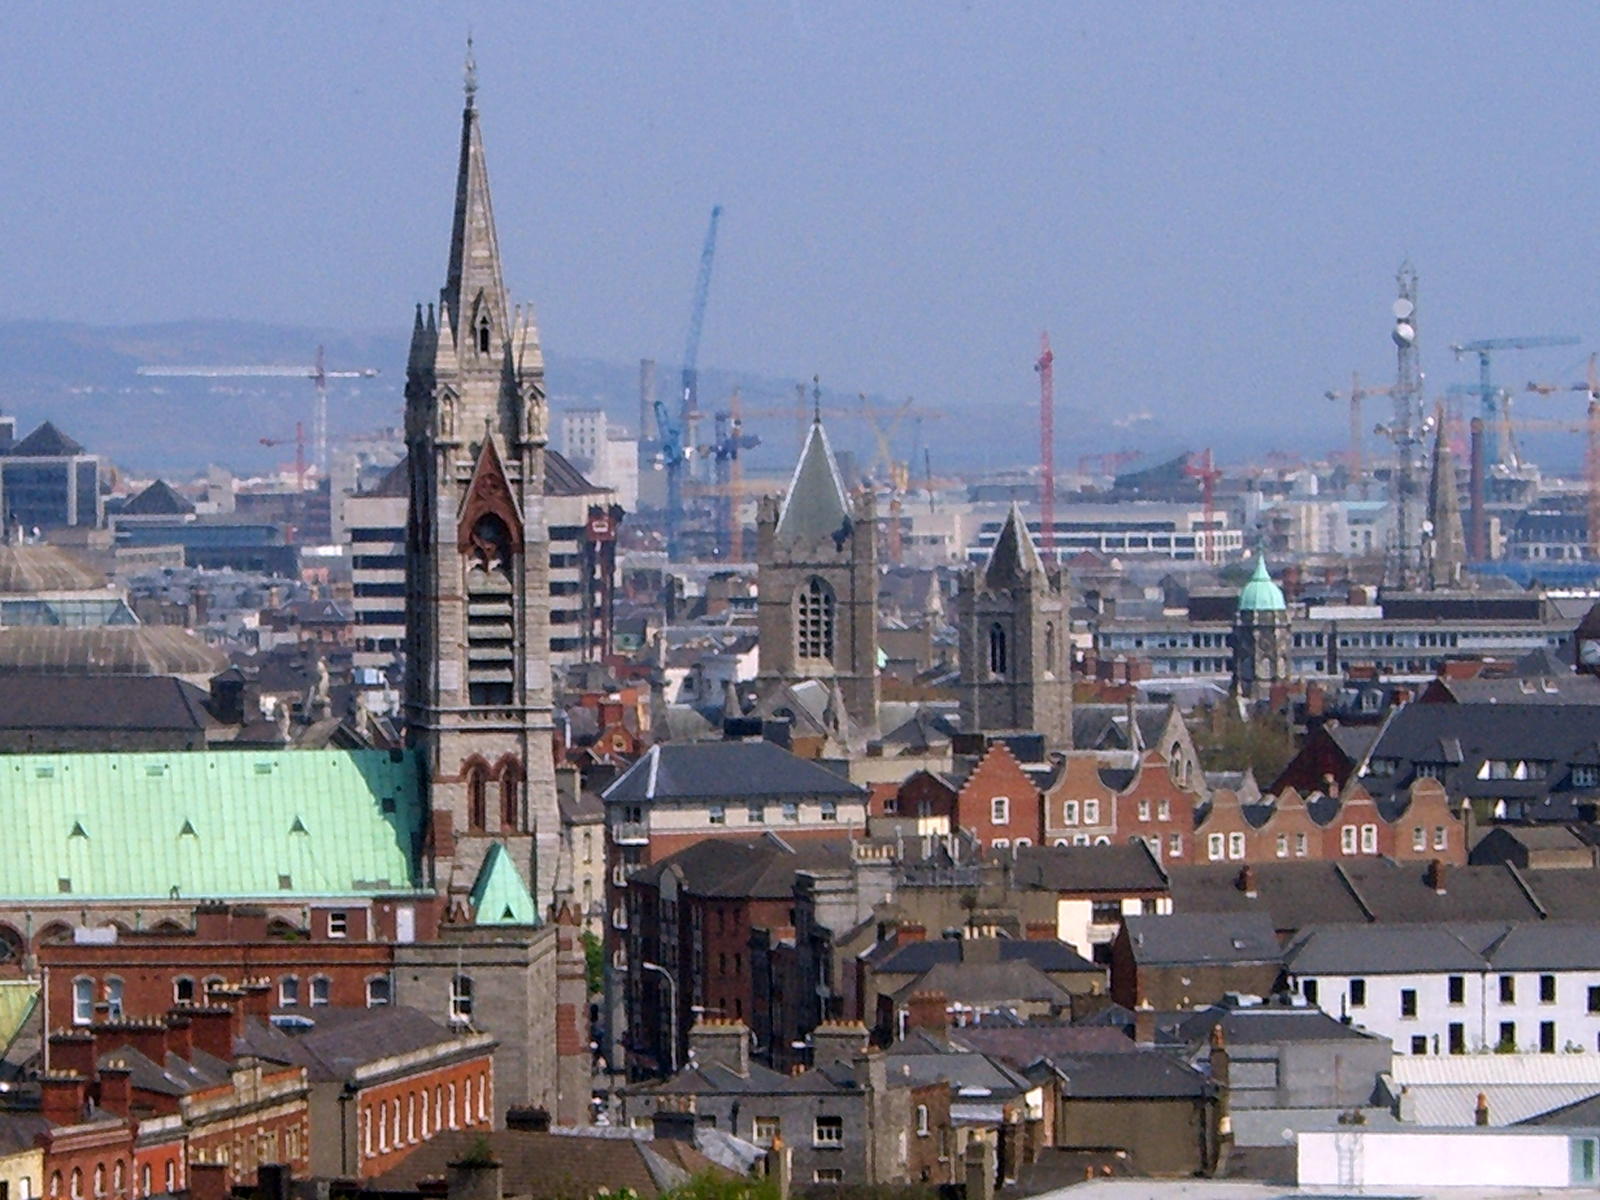 Dublin skyline, cranes